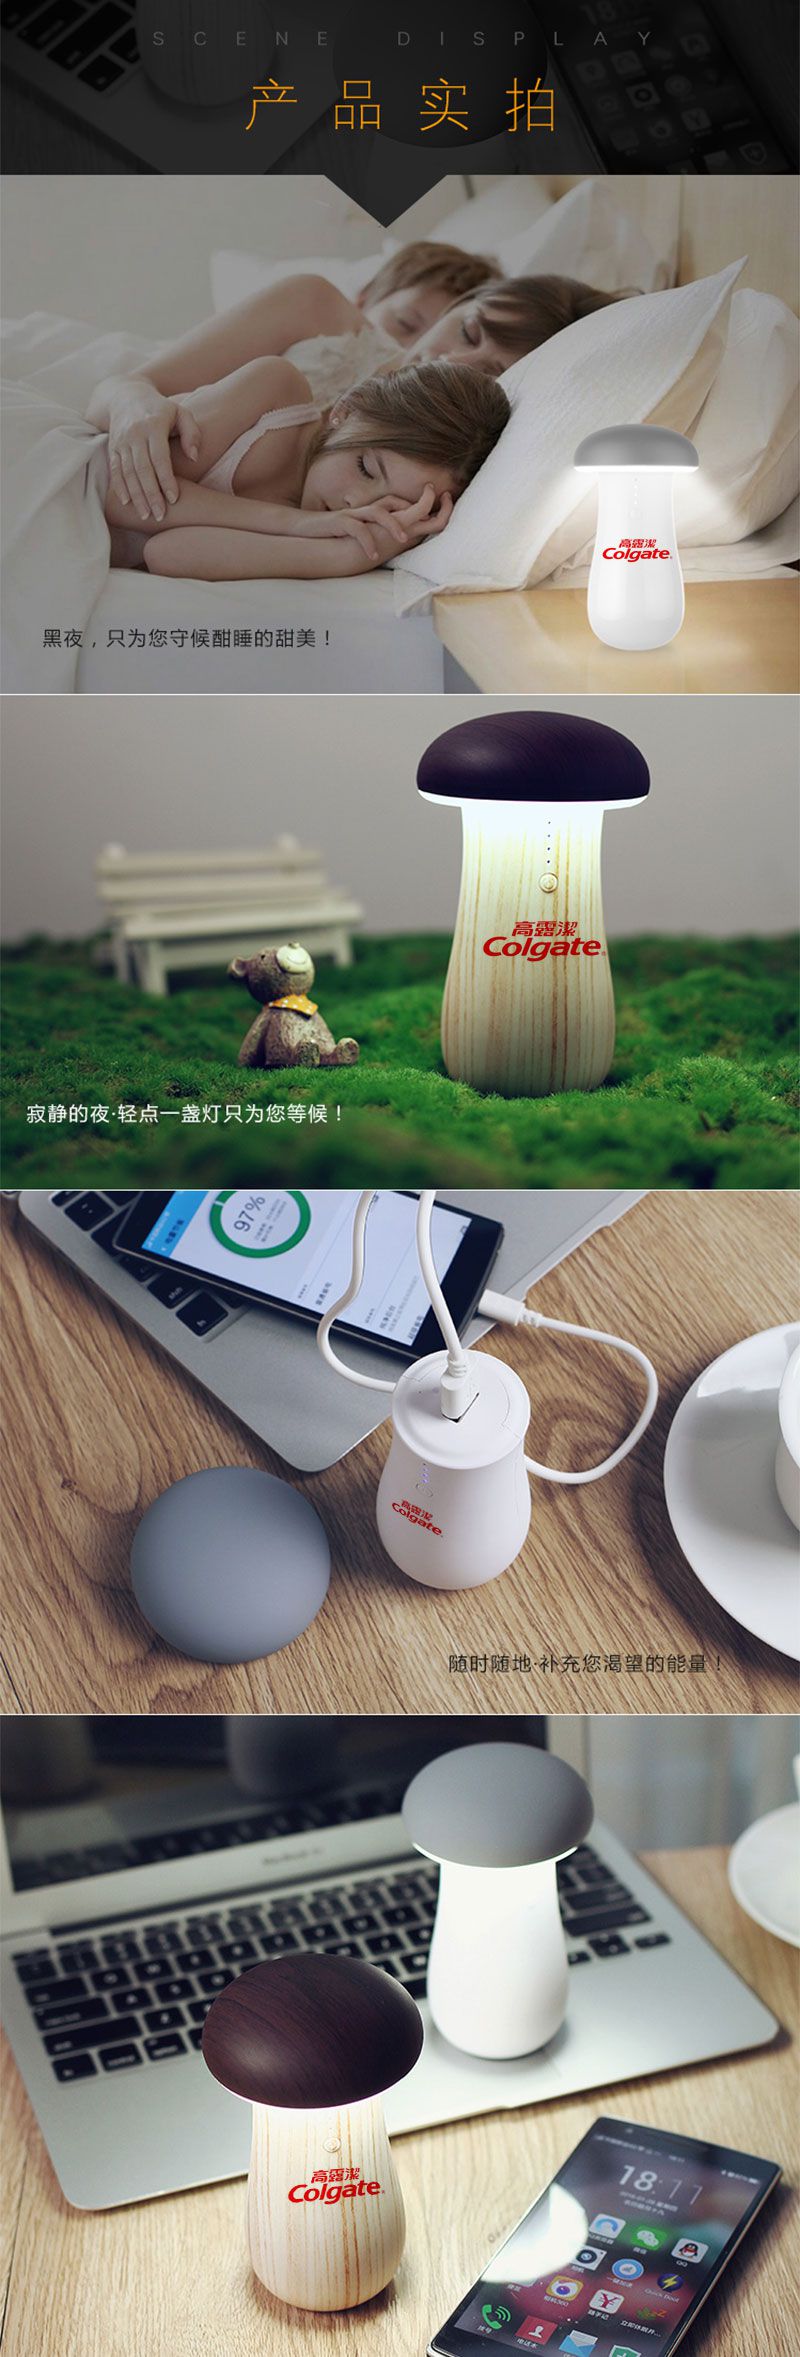 创意蘑菇灯移动电源礼品 迷你便携小巧高容量手机通用充电宝定制-高露洁定制案例